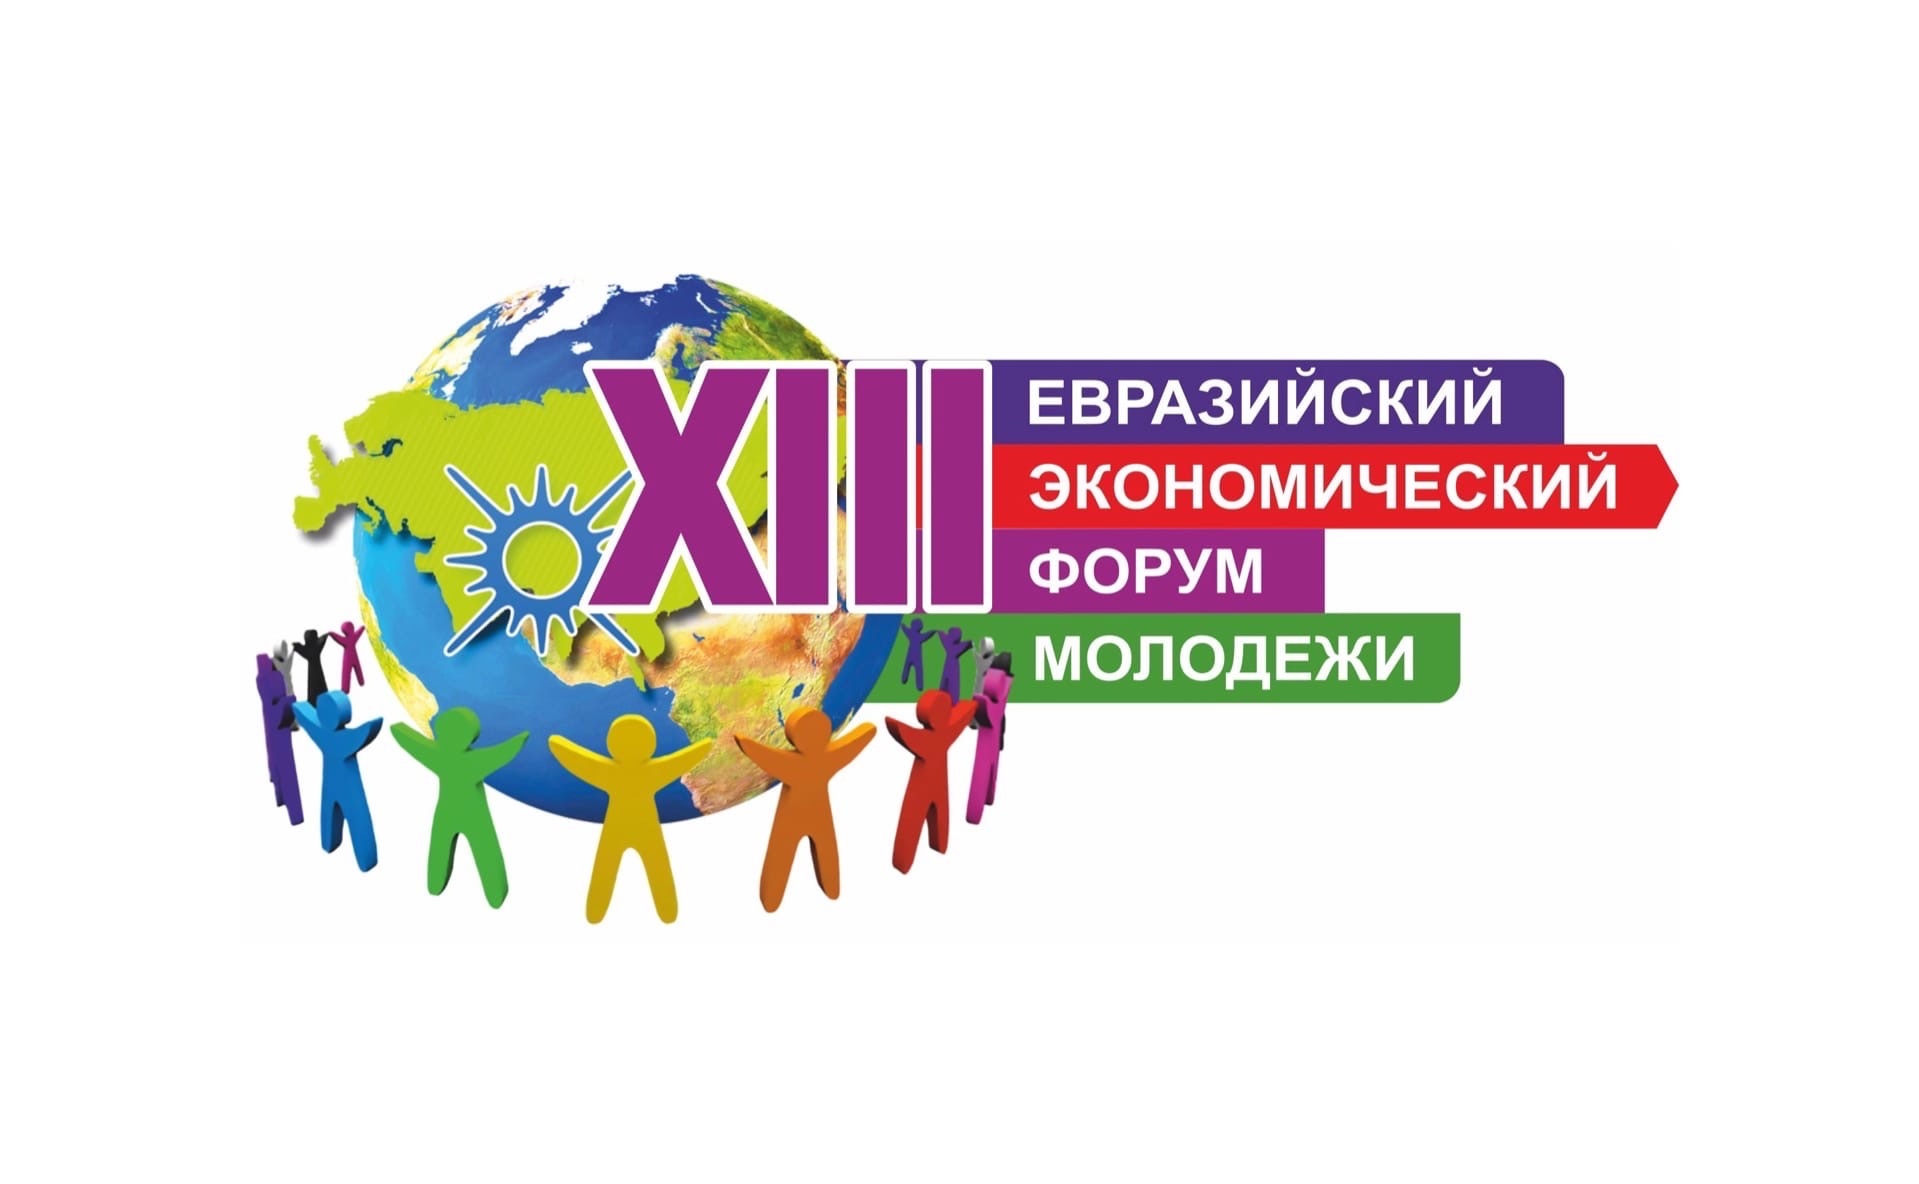 XIII Евразийский экономический форум молодежи